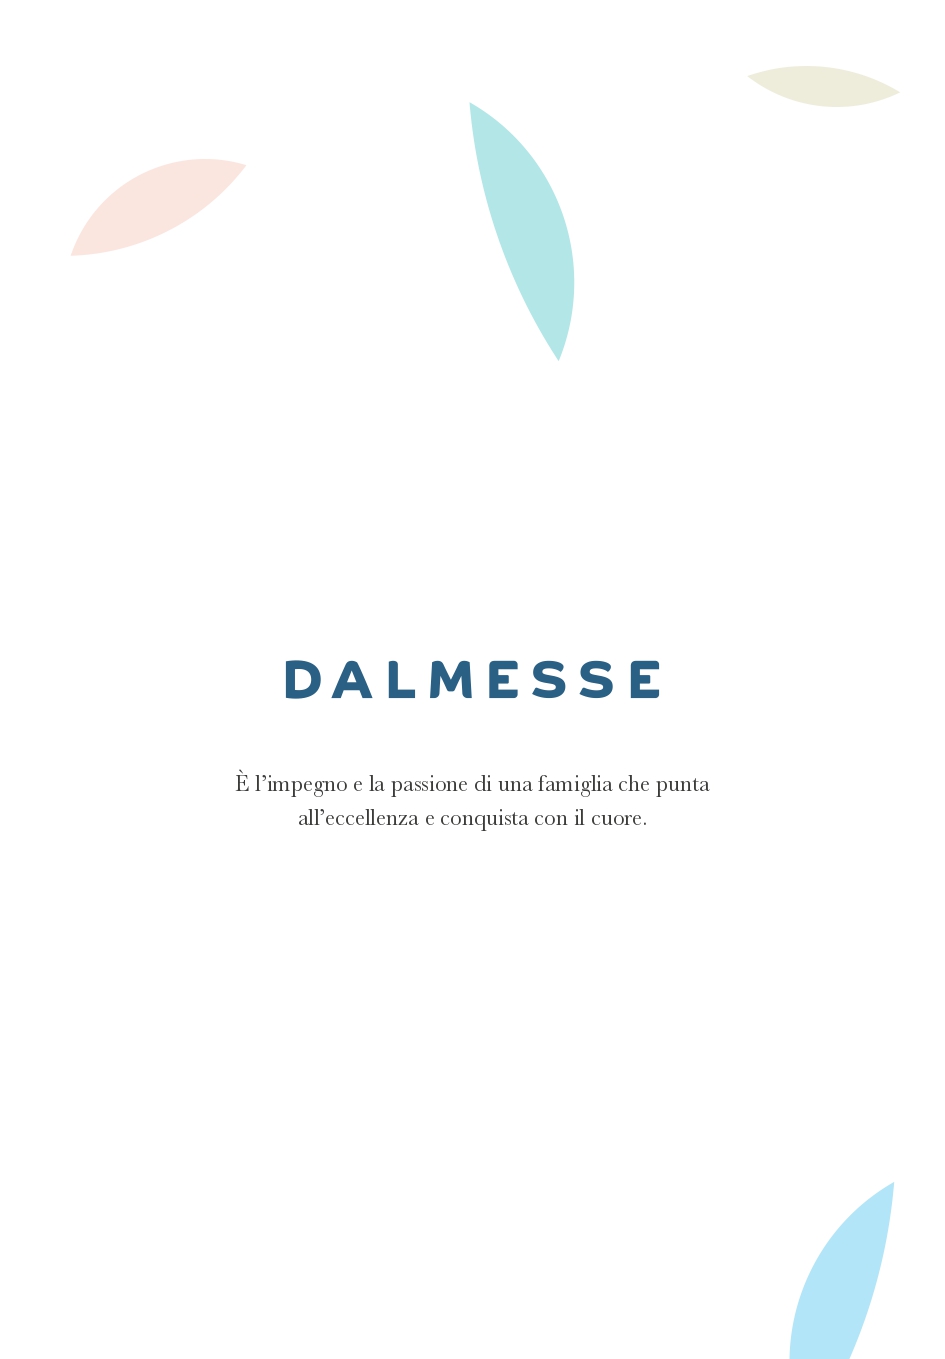 PDF_Catalogo_Kermesse_2021_page-0002